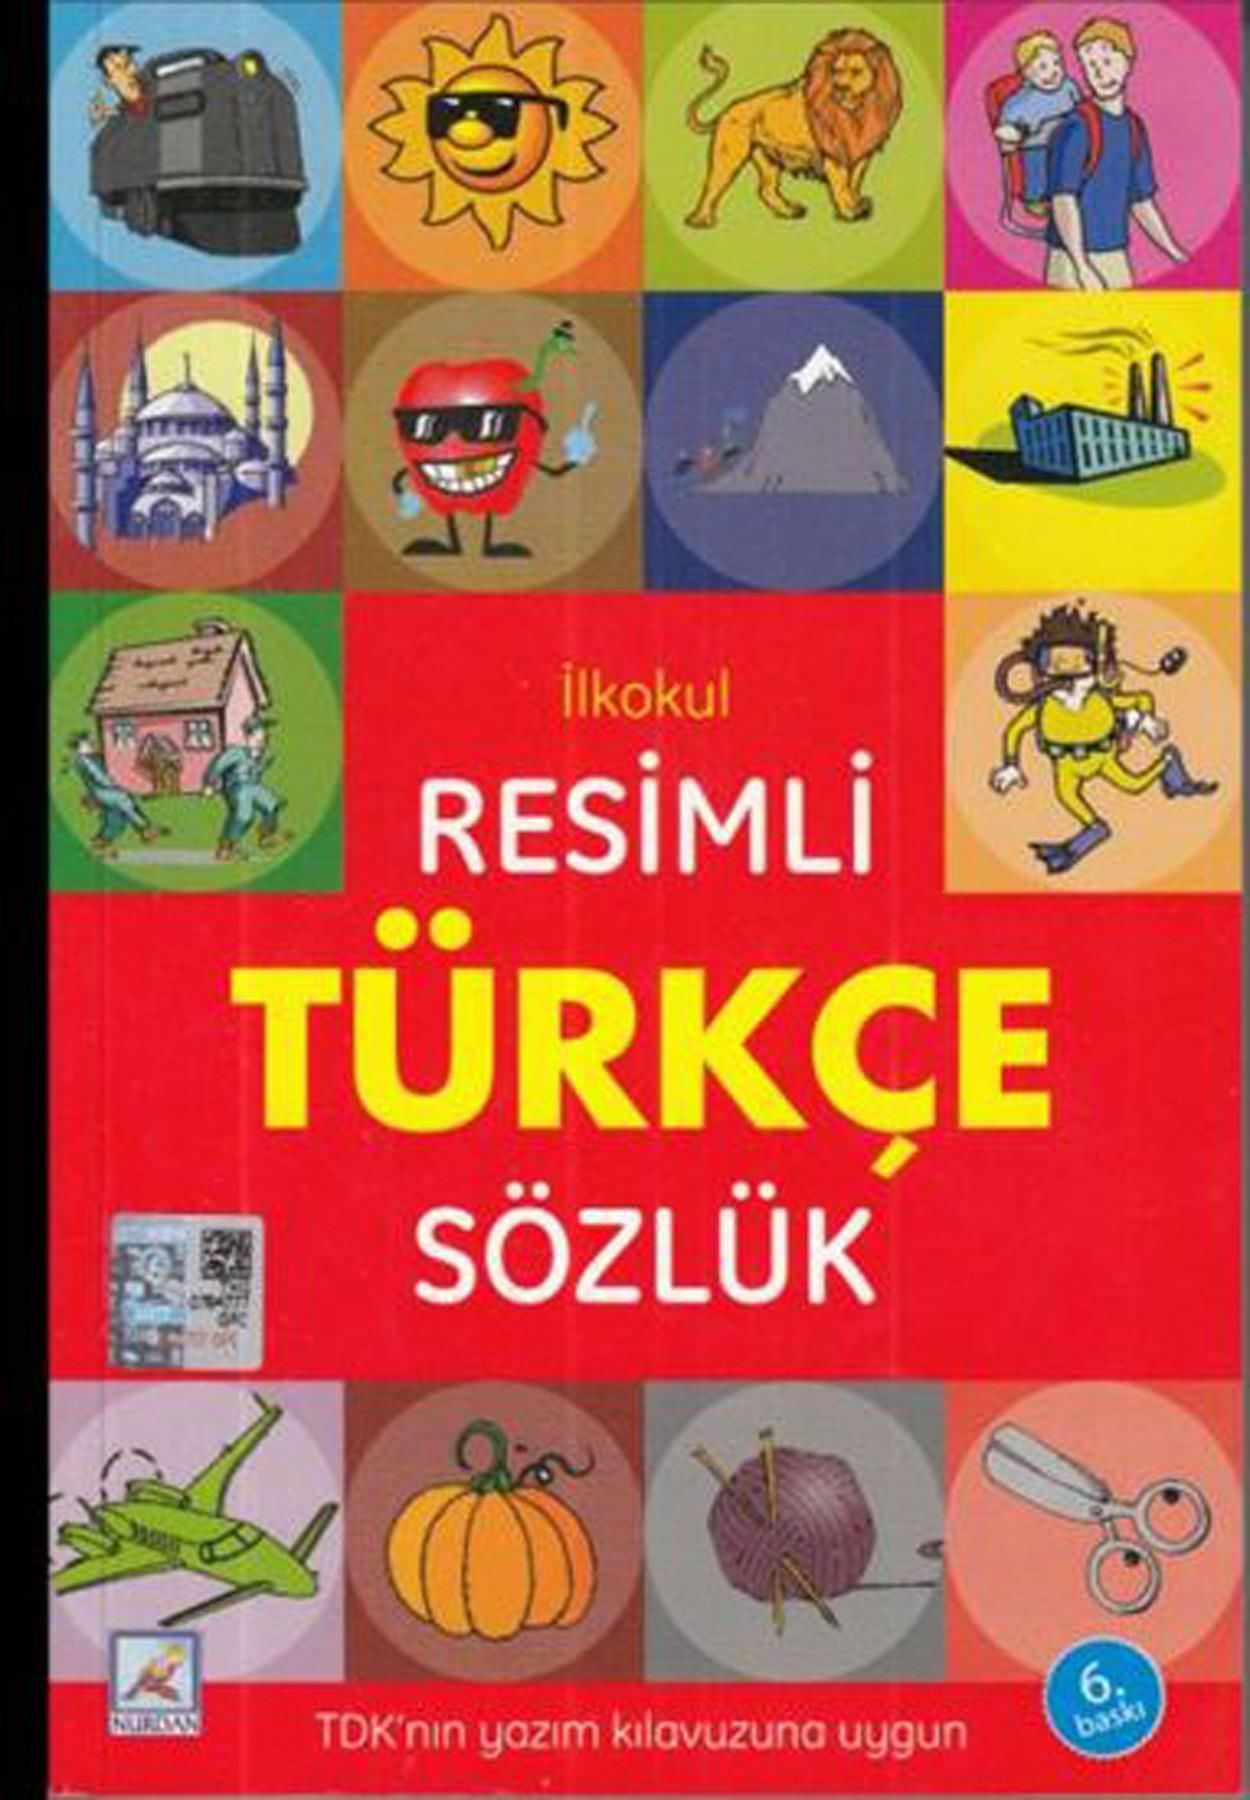 Nurdan Resimli Türkçe Sözlük